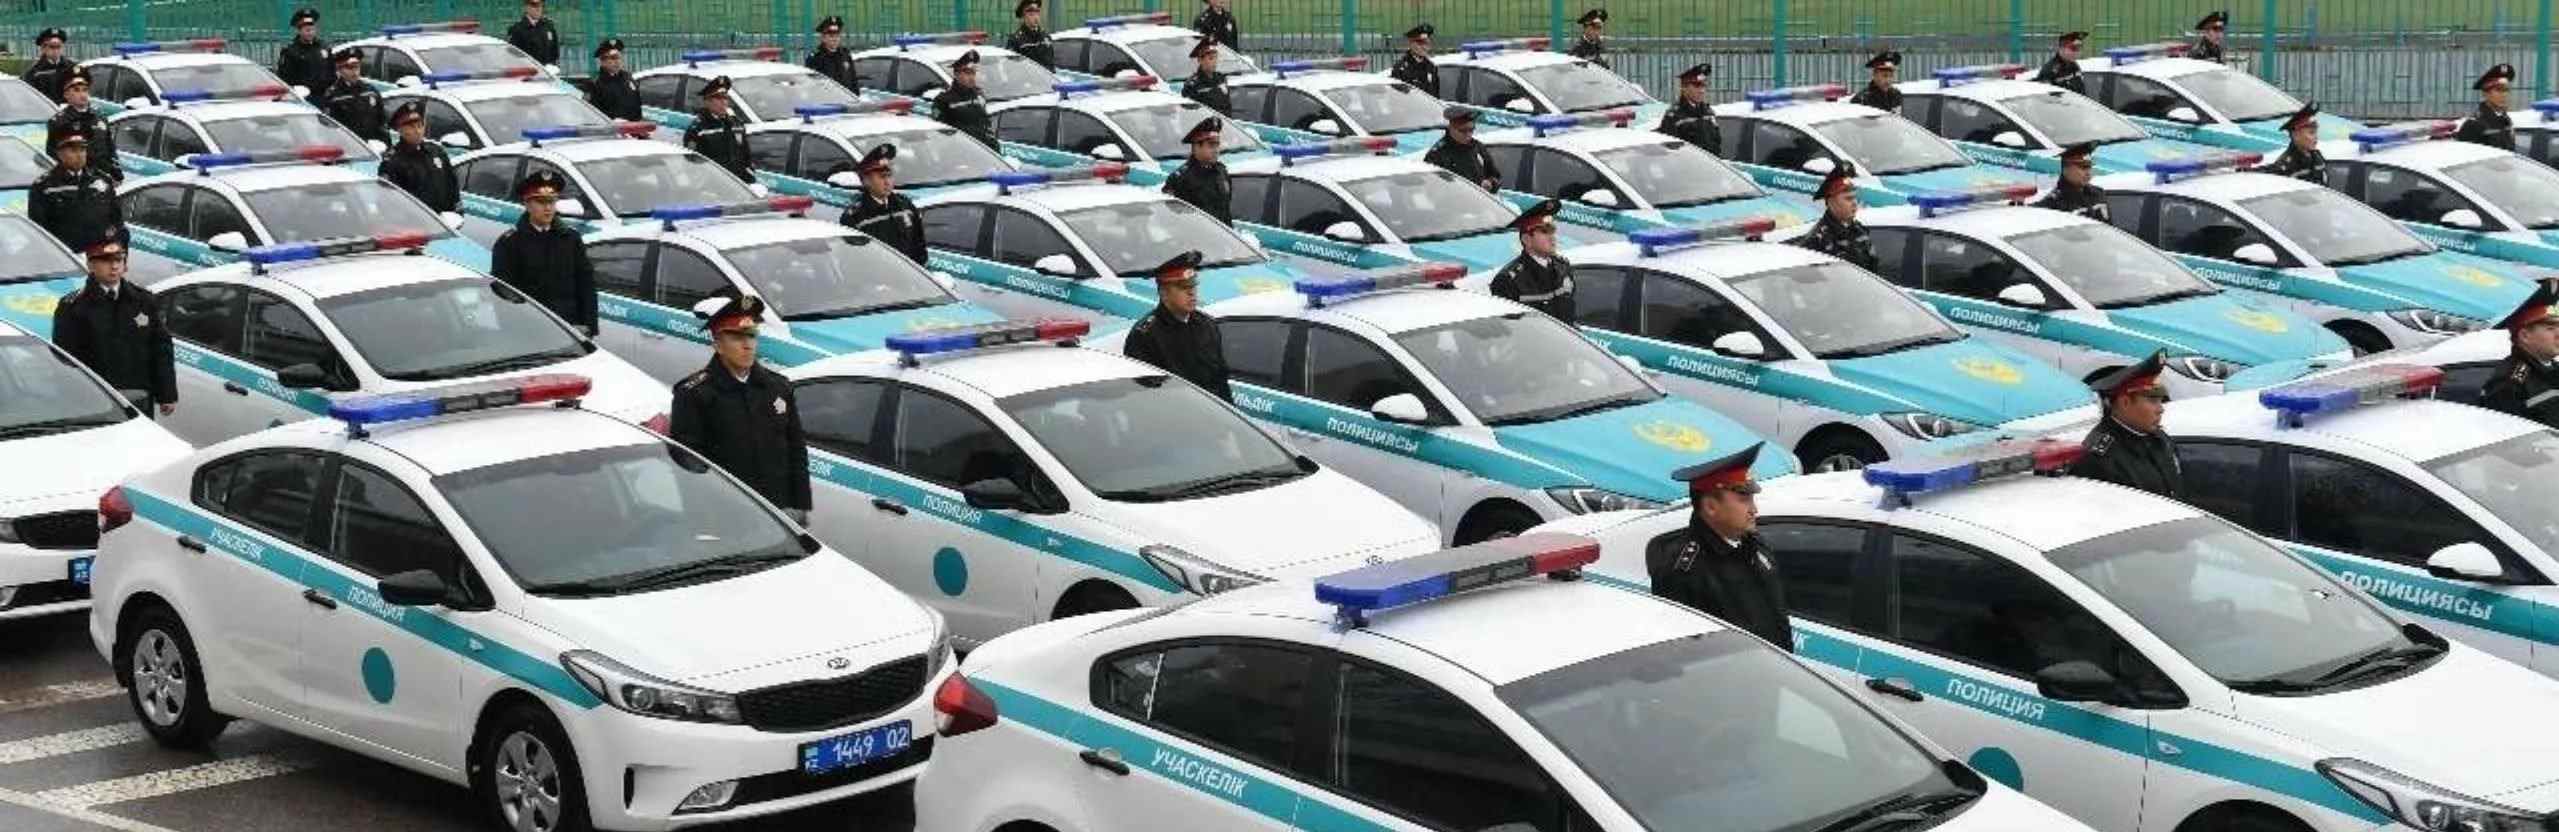 День дорожной полиции Казахстана 23 ноября, отметим вместе 15